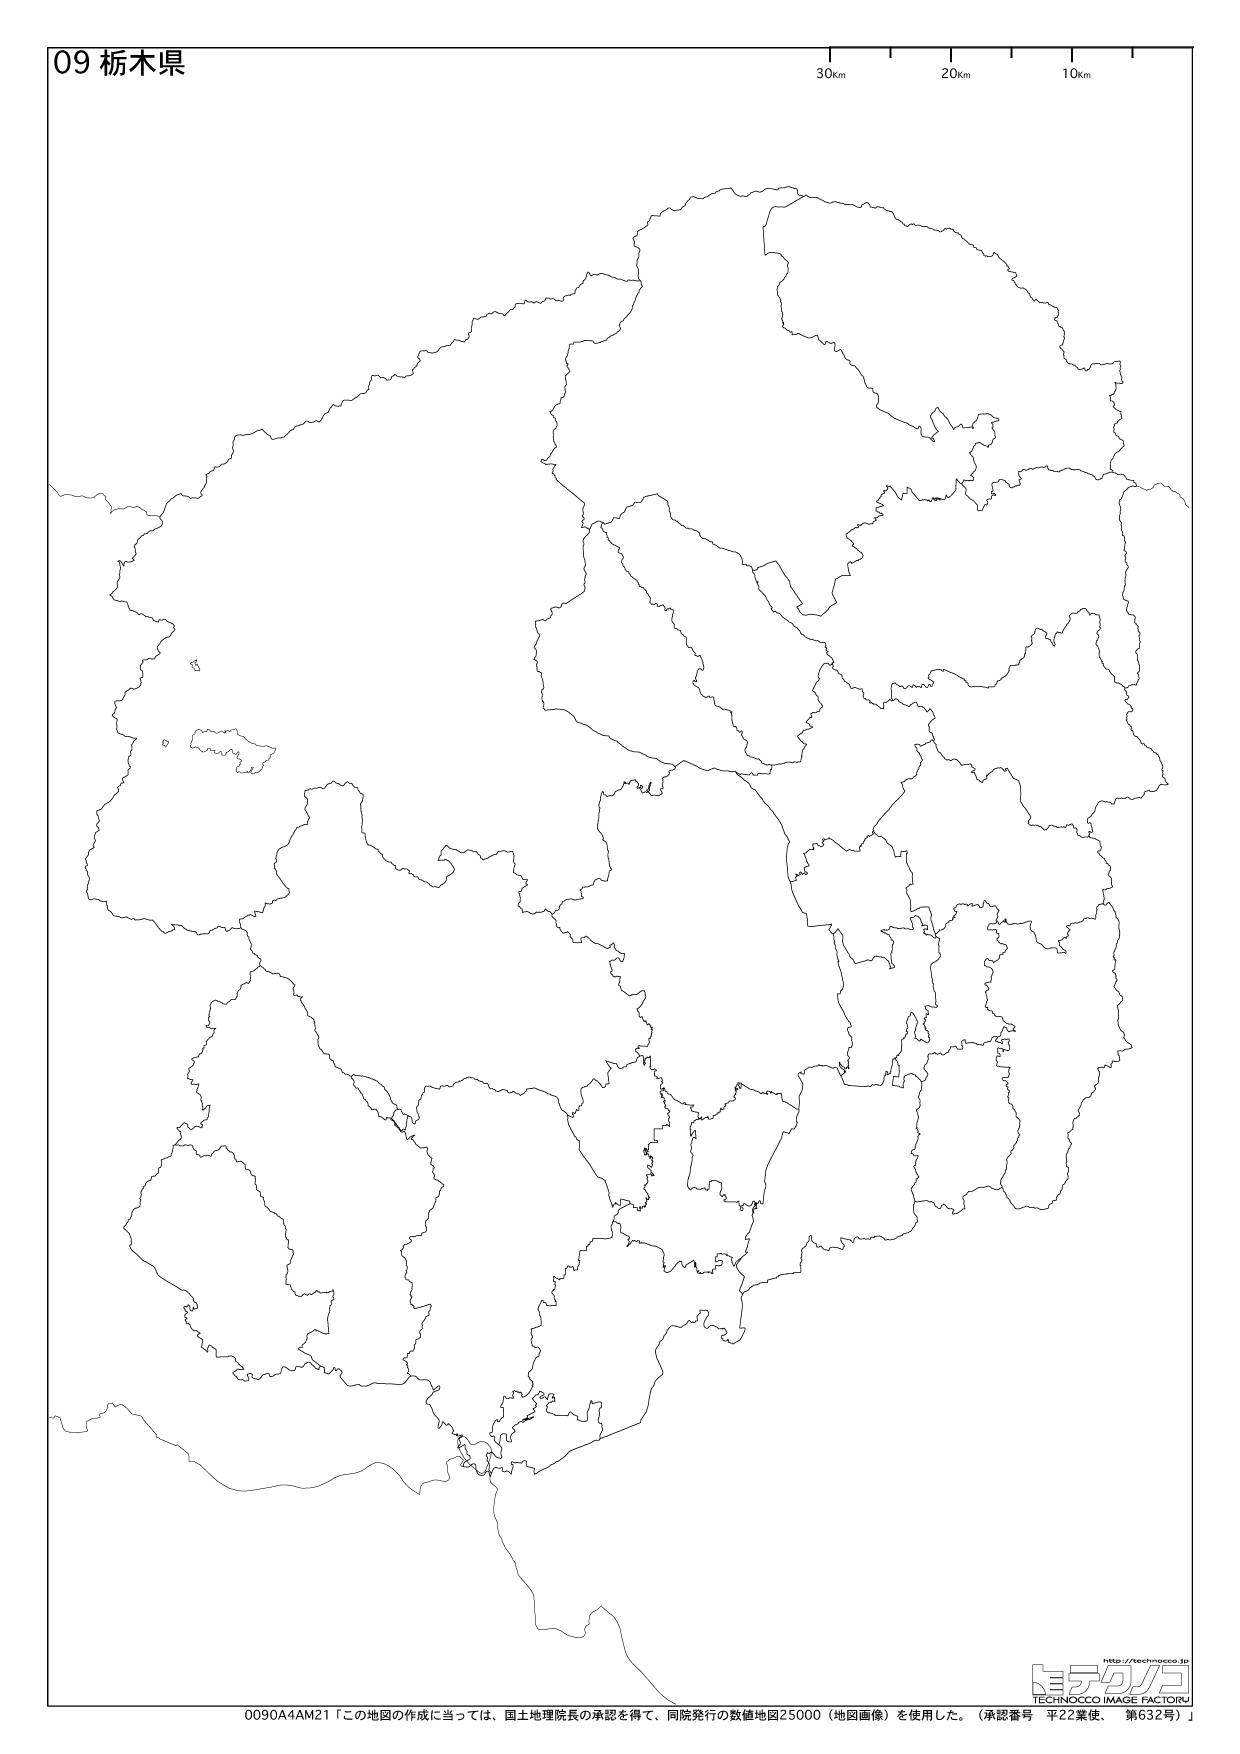 栃木県の白地図と市町村の合併情報